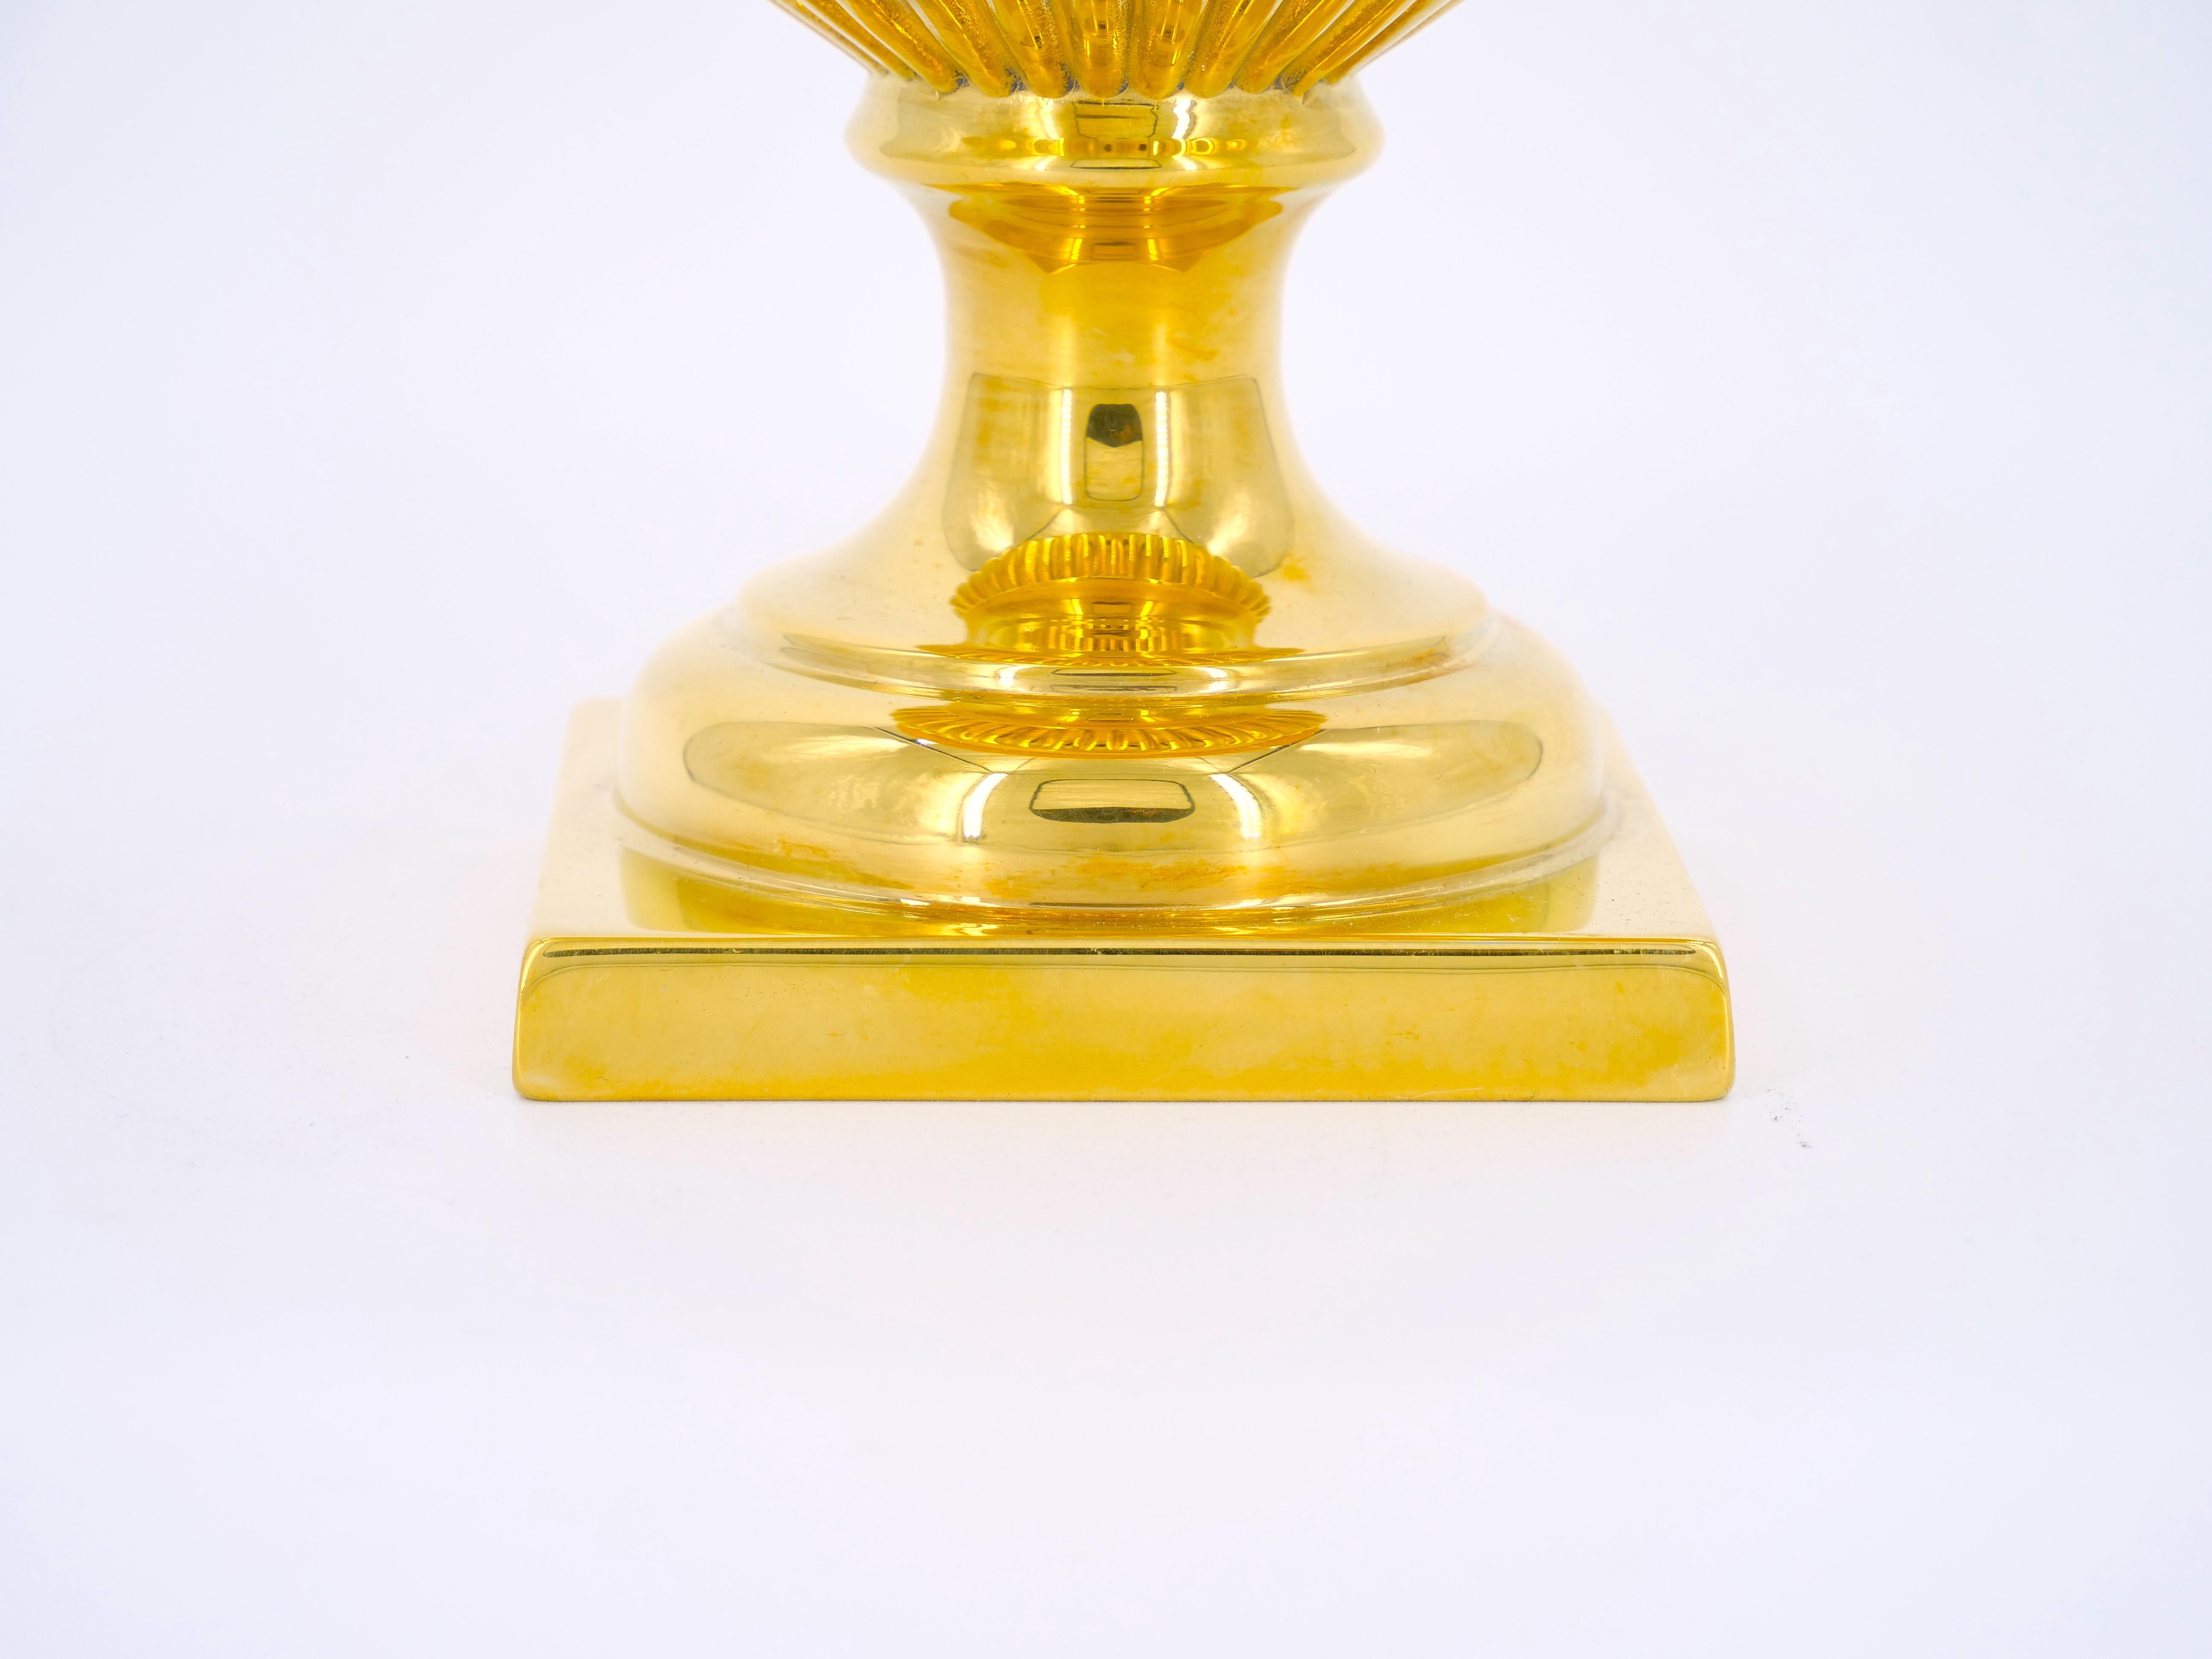 Eiskübel aus vergoldetem Metall in Form einer römischen Campana-Vase mit quadratischem Sockel, mit Verzierungen an der Taille und einem Rand mit Eipfeil-Motiv. In ausgezeichnetem Zustand. Offensichtlich unsigniert.